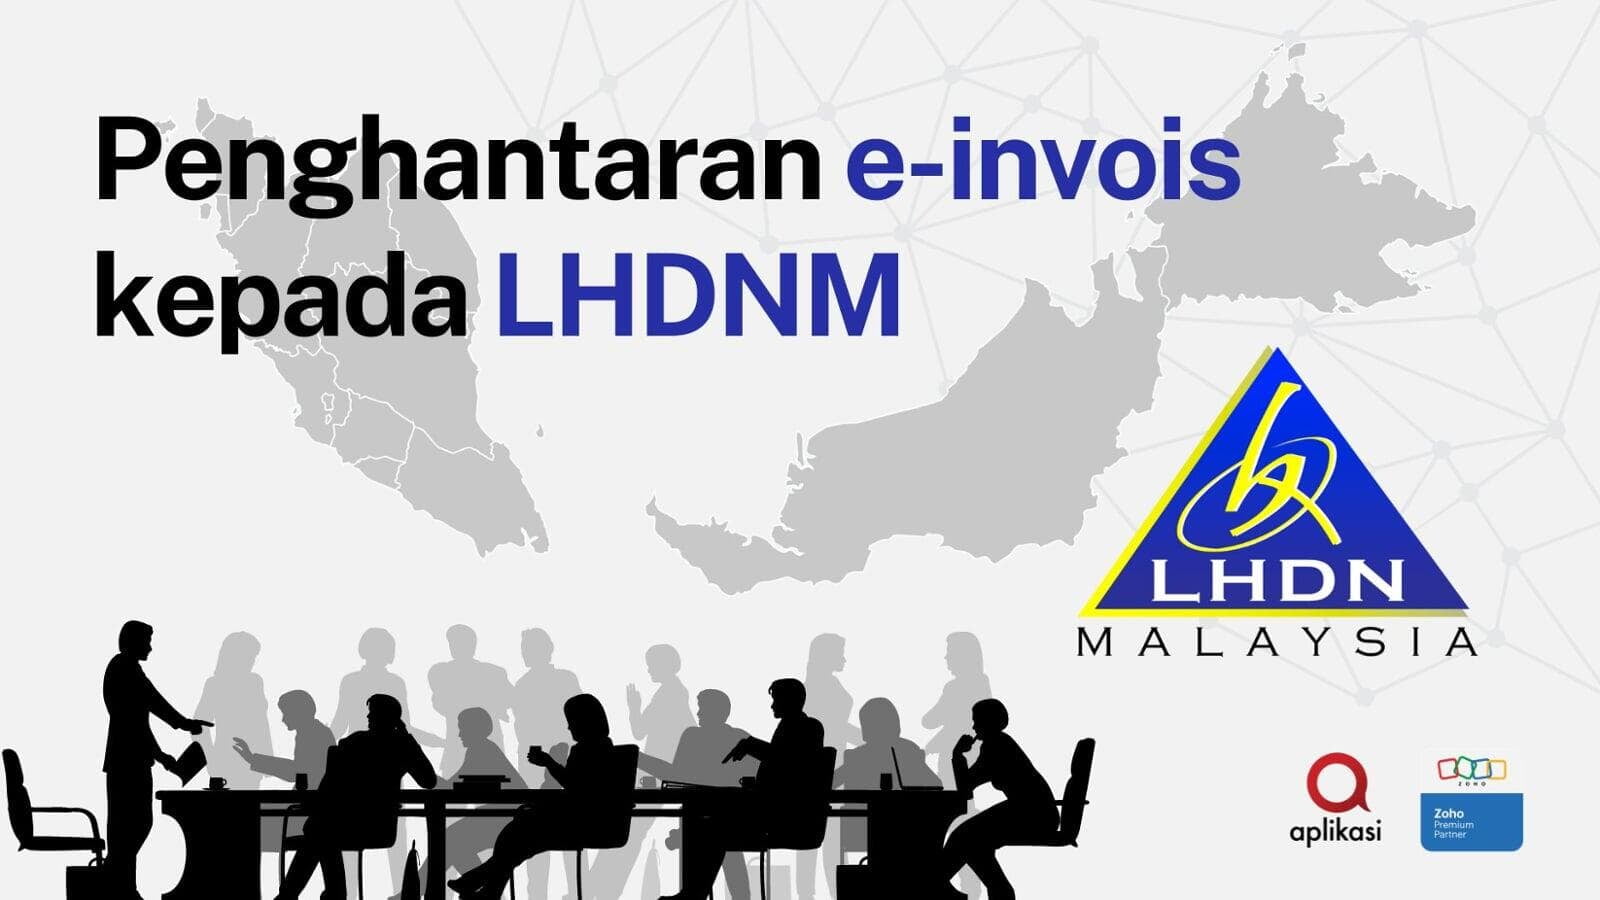 Penghantaran e-invois kepada LHDNM